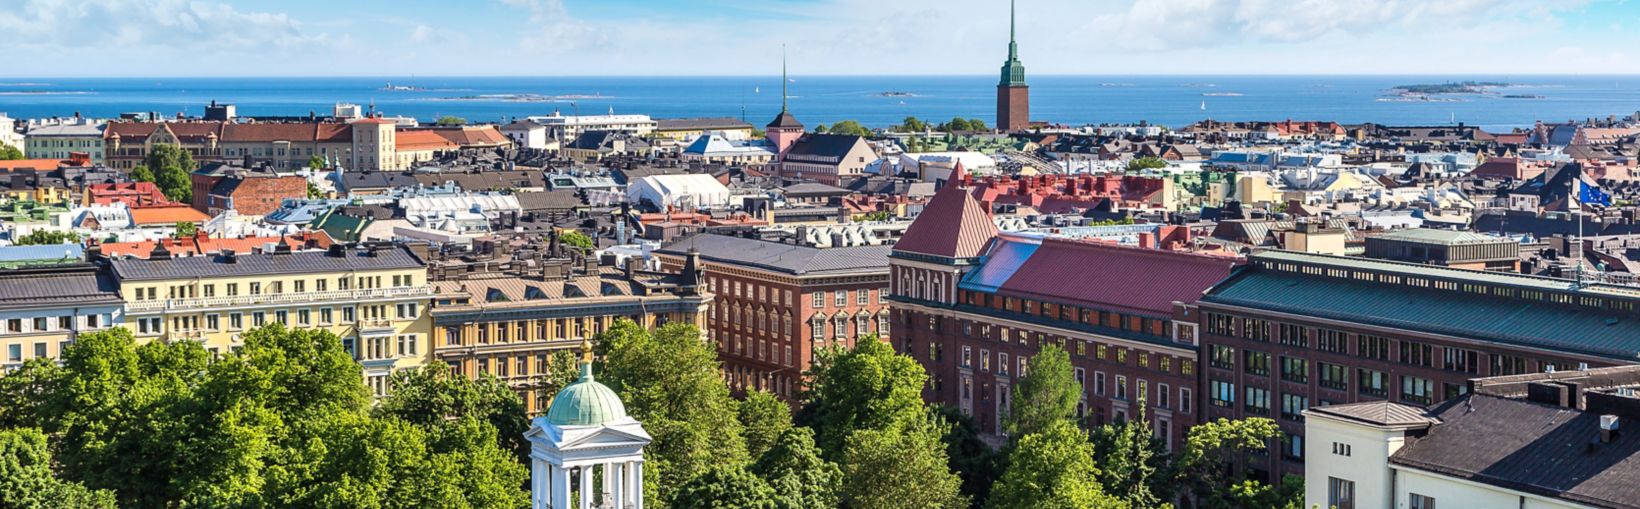 Panorama-Luftaufnahme von Helsinki an einem schönen Sommertag, Finnland